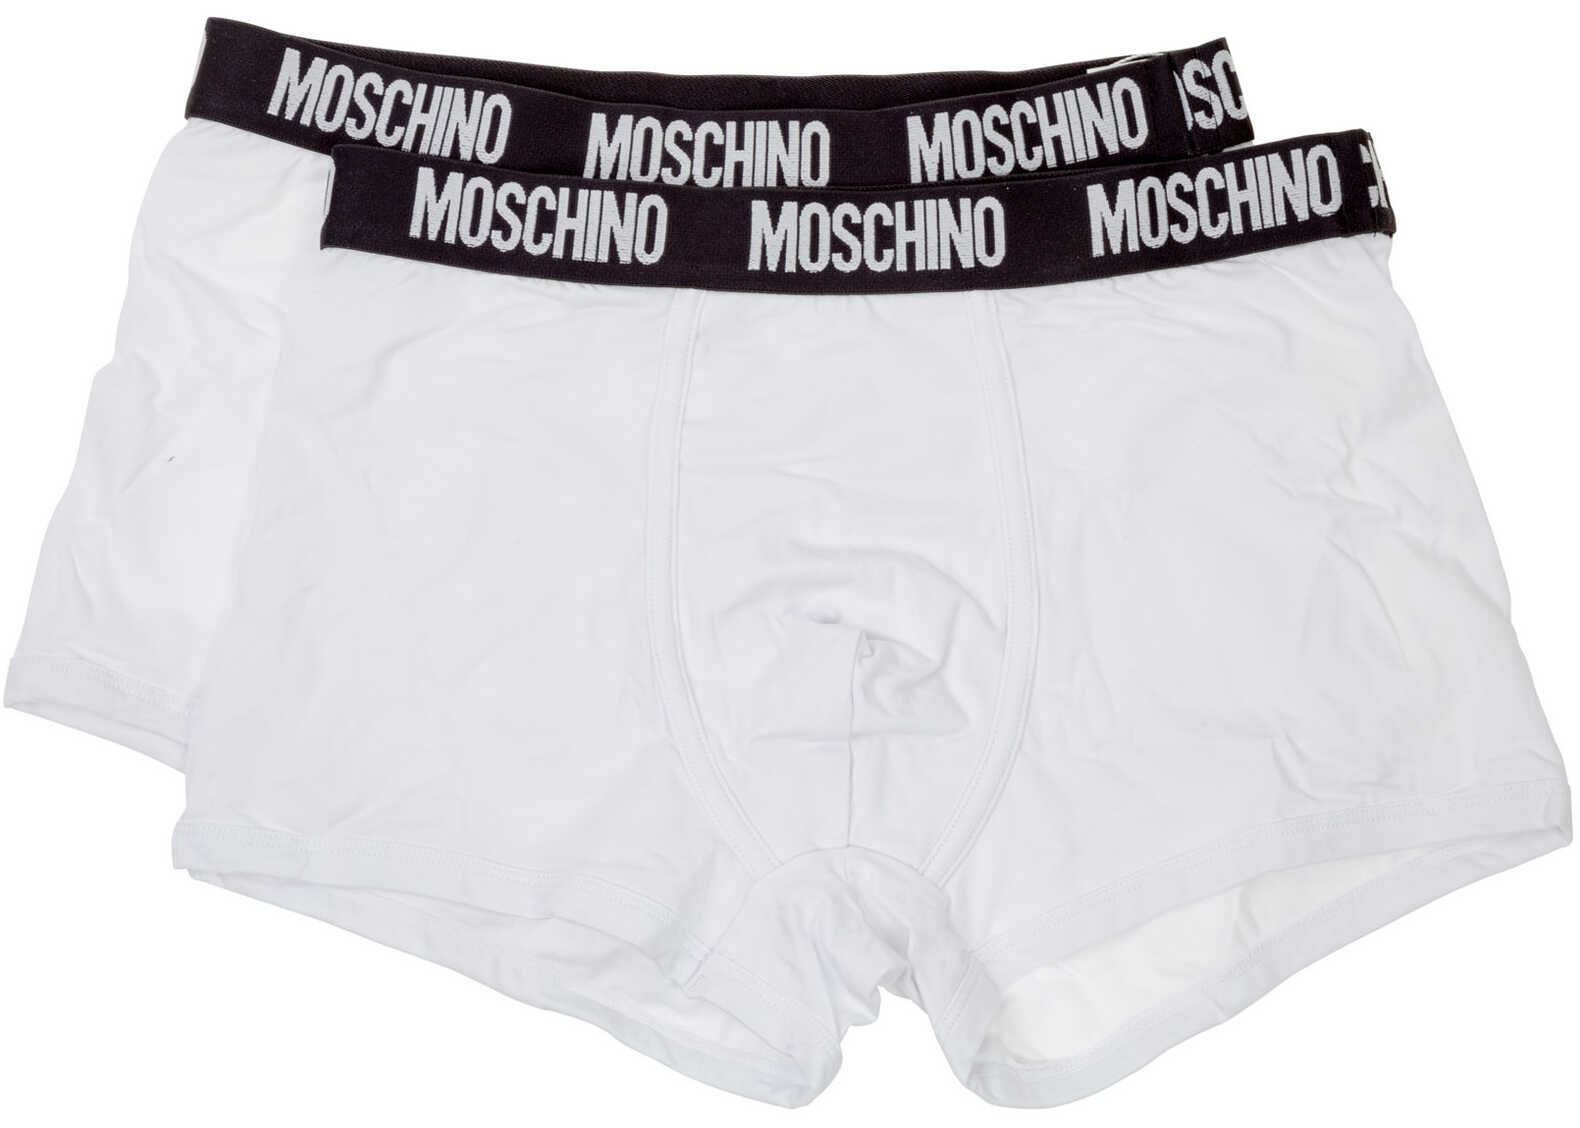 Moschino Bipack Underwear A477181360001 122 White